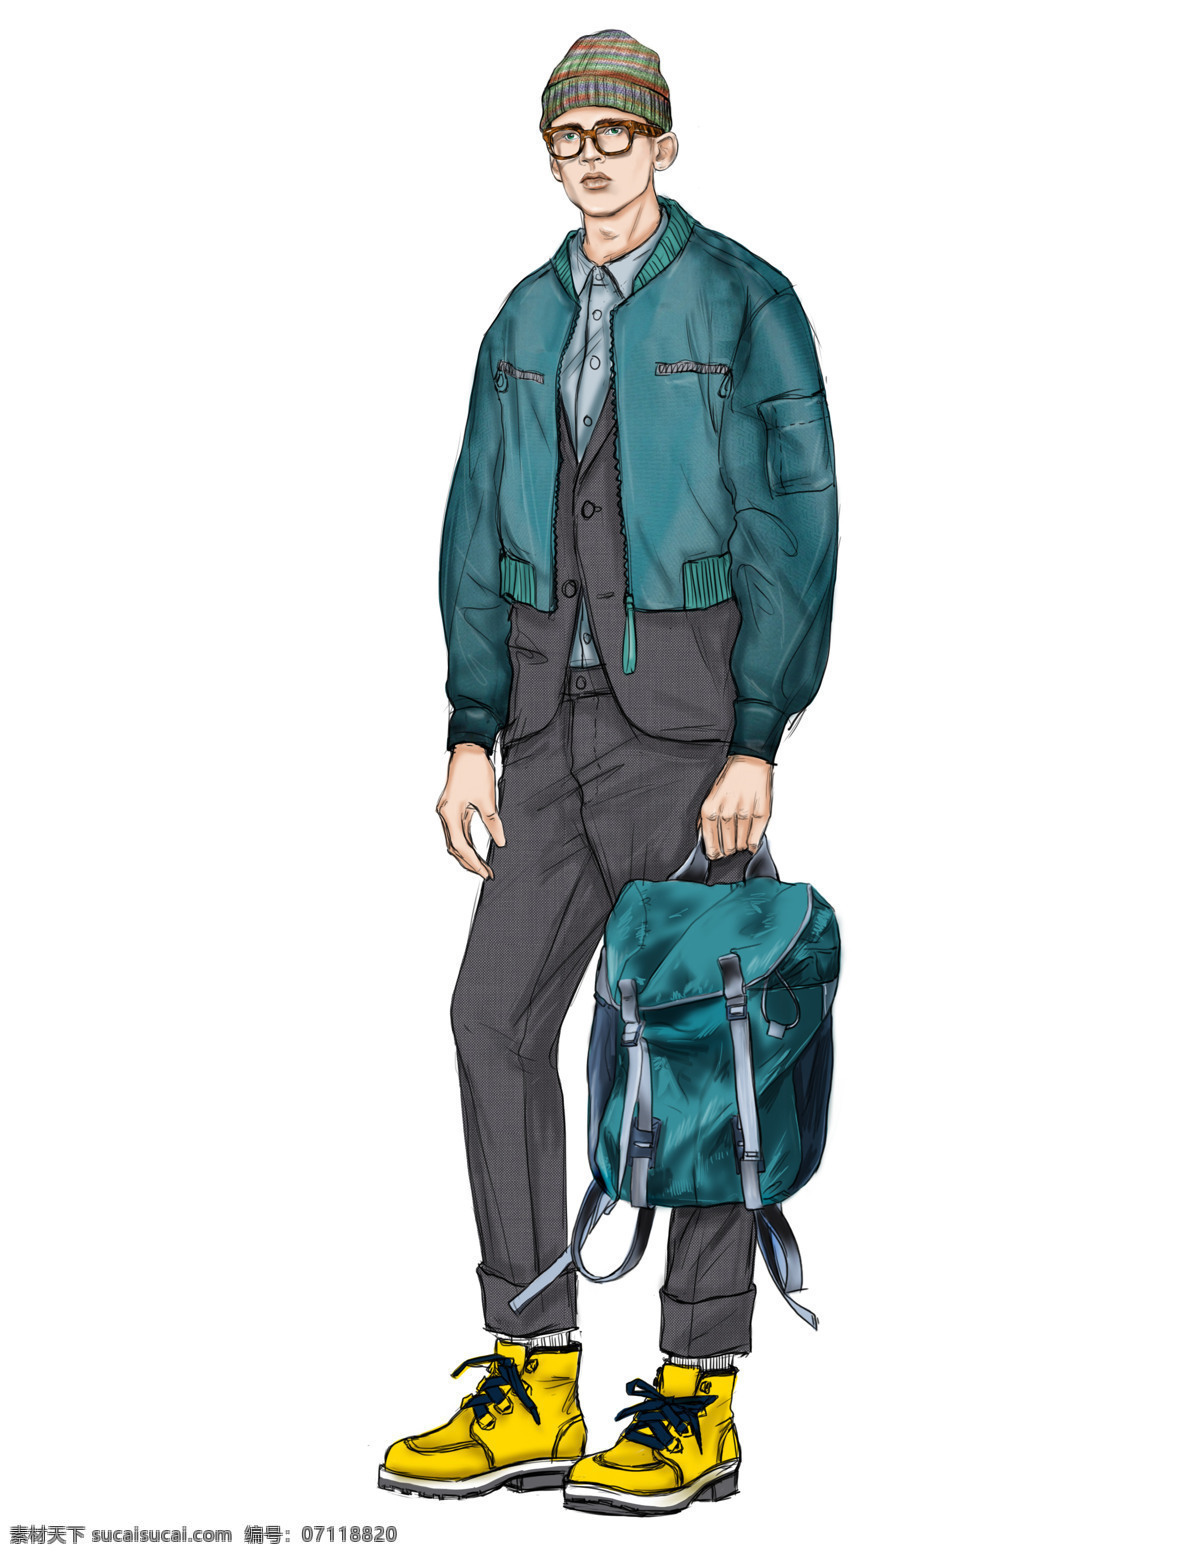 时尚休闲 蓝绿色 外套 男装 效果图 服装设计 黄色鞋子 男装效果图 时尚男装